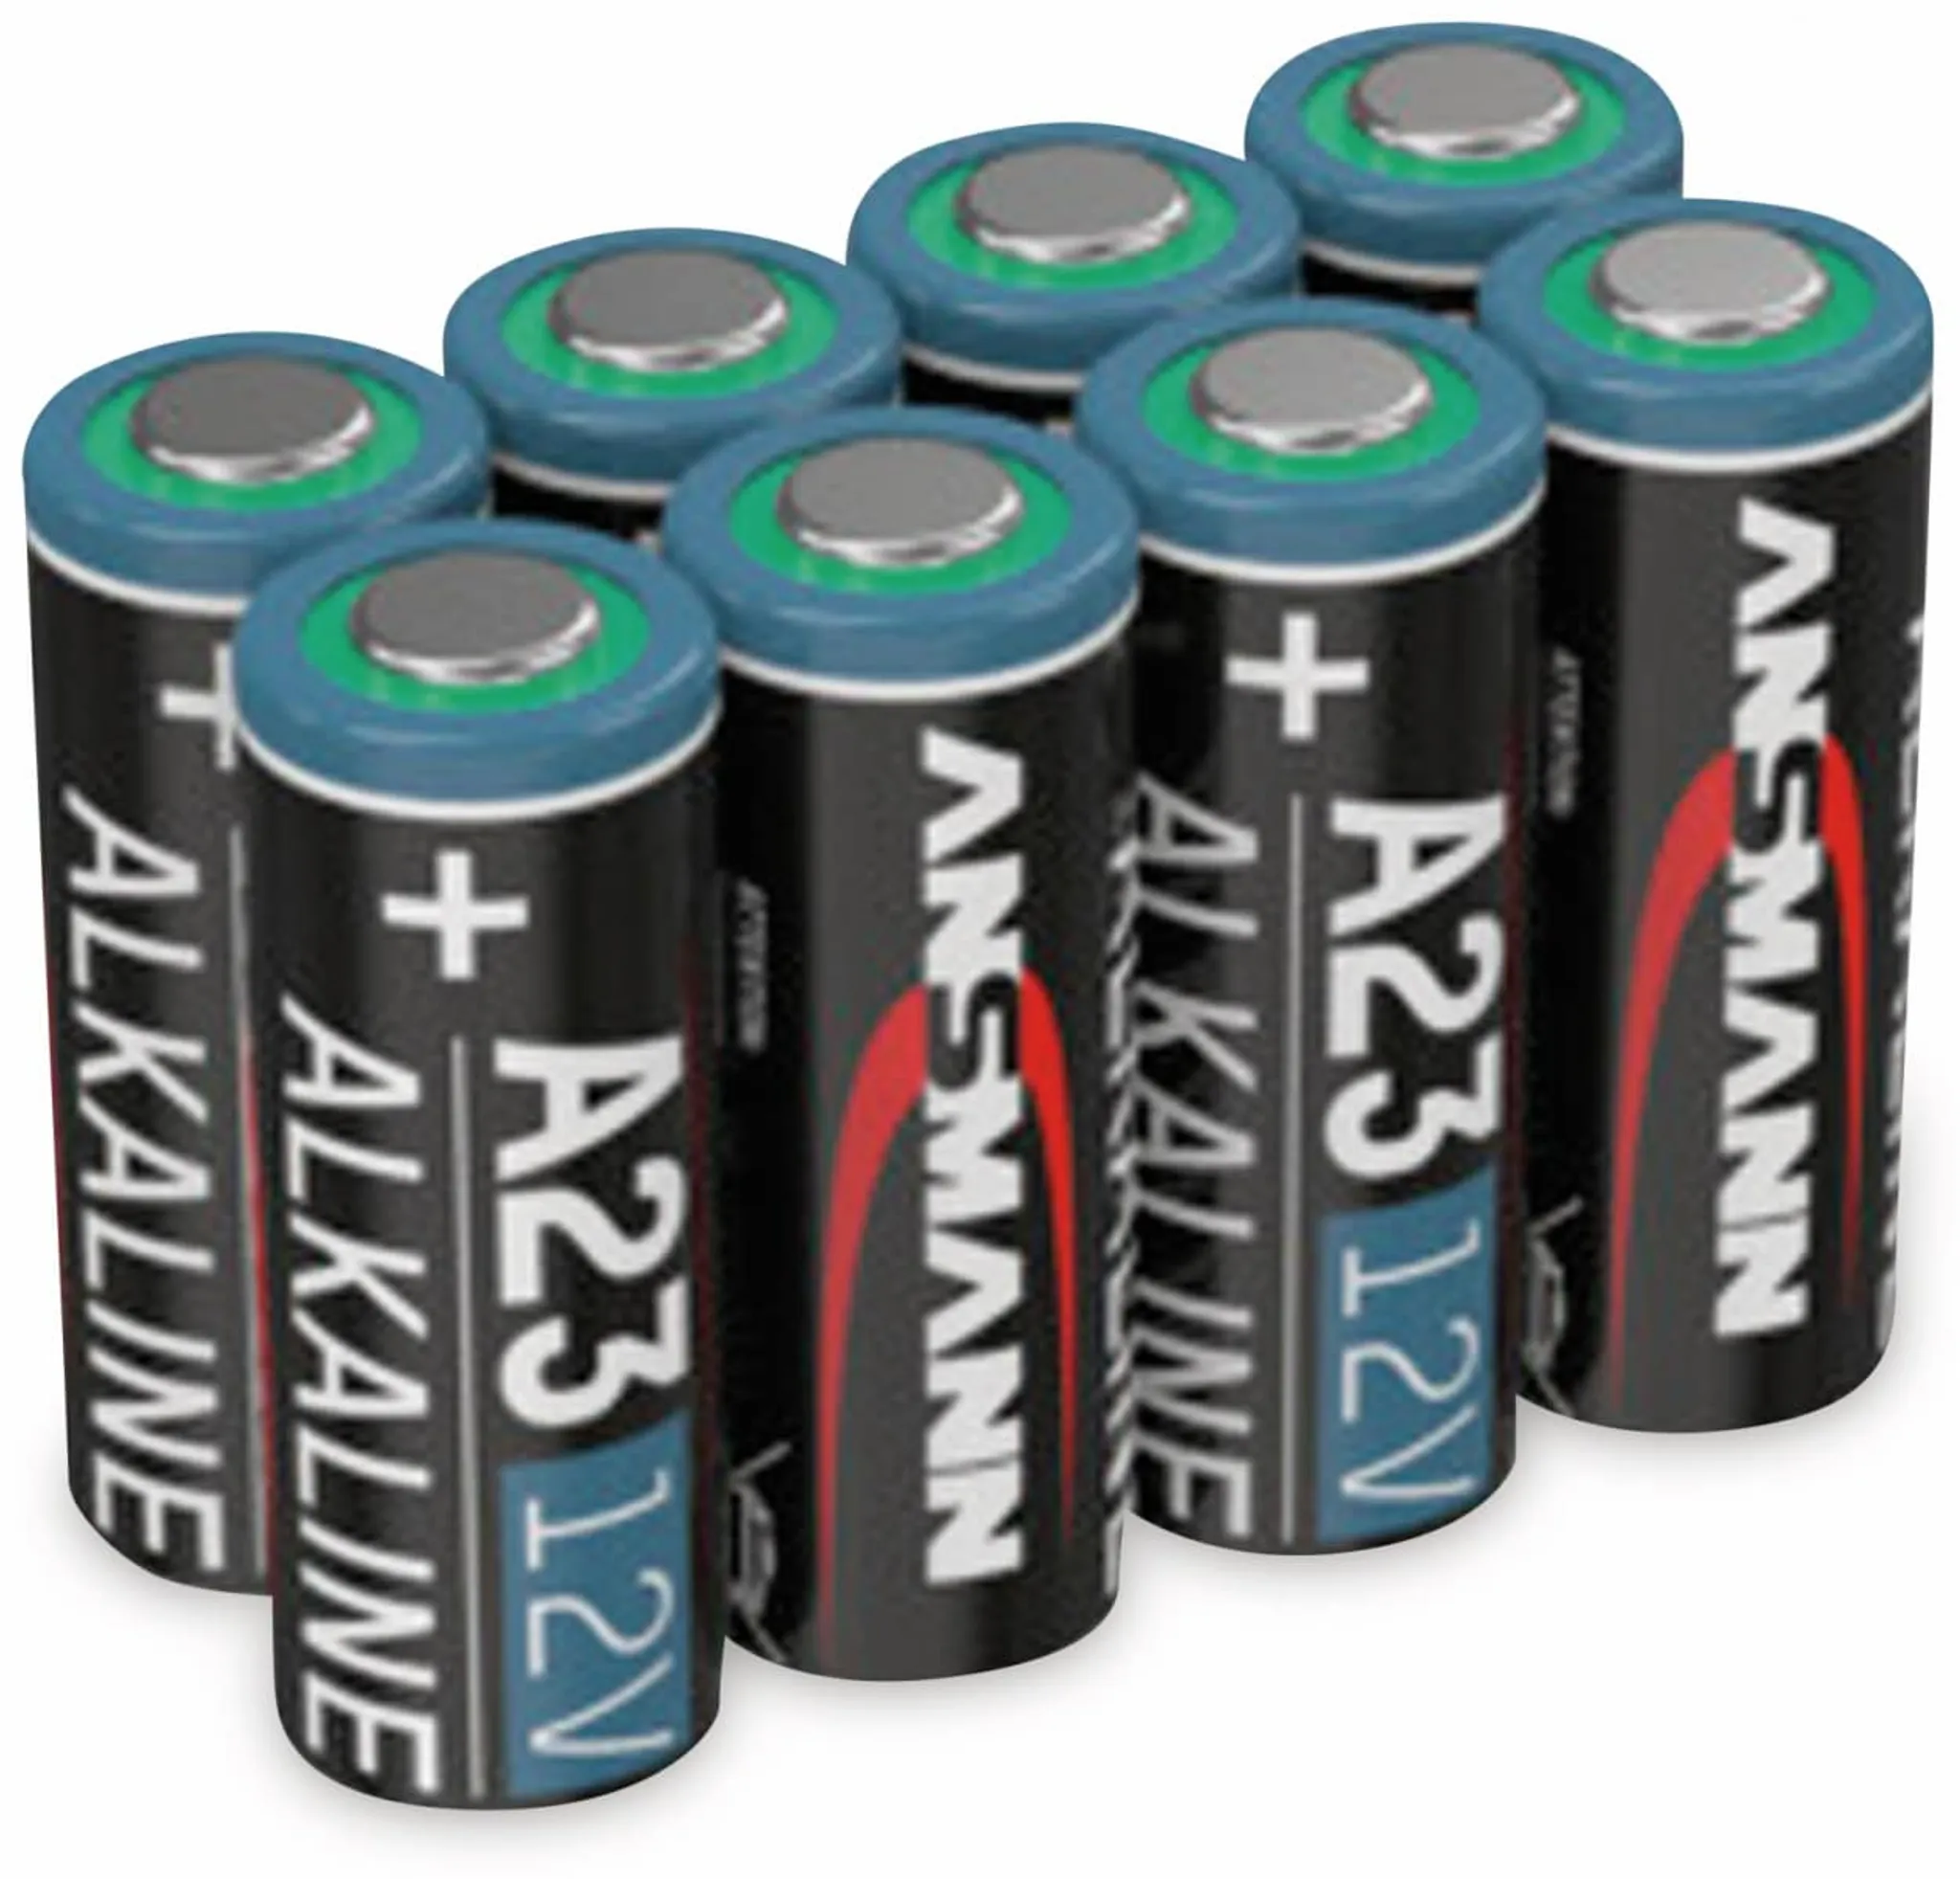 A23 Alkaline Batterie 12V - www., 1,99 €